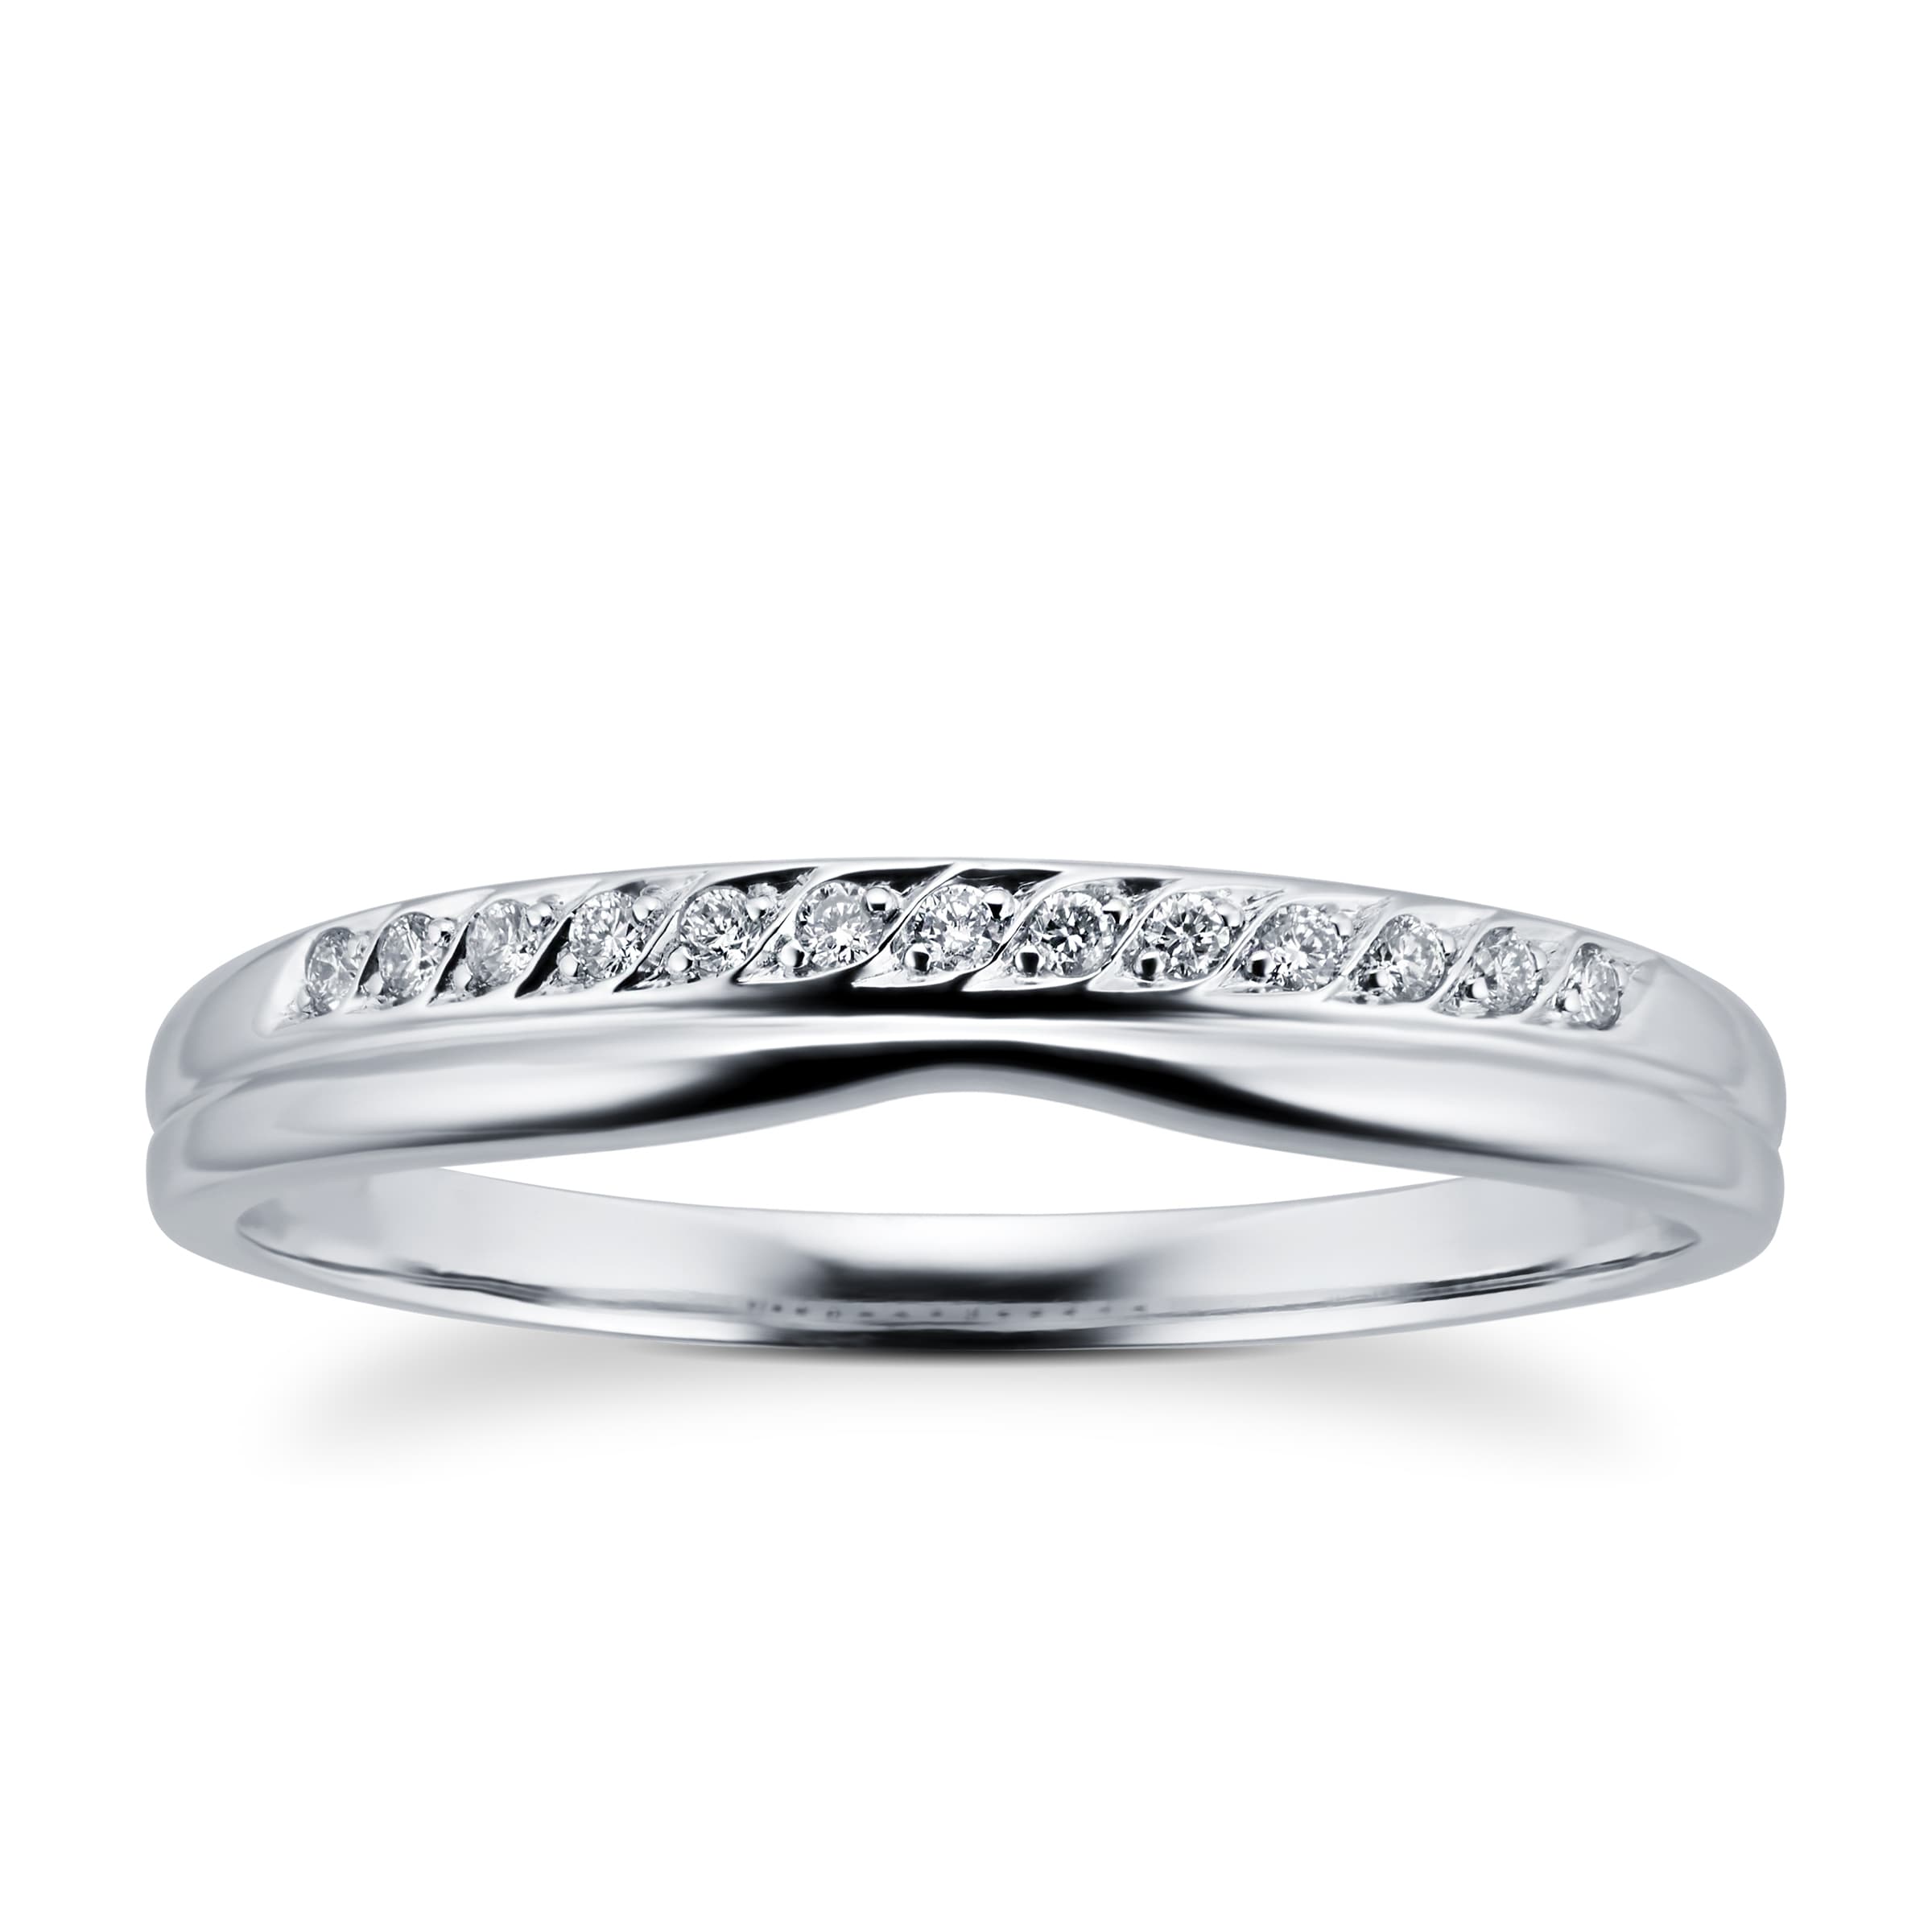 Ladies Diamond Set Shaped Wedding Ring In 18 Carat White Gold - Ring Size O